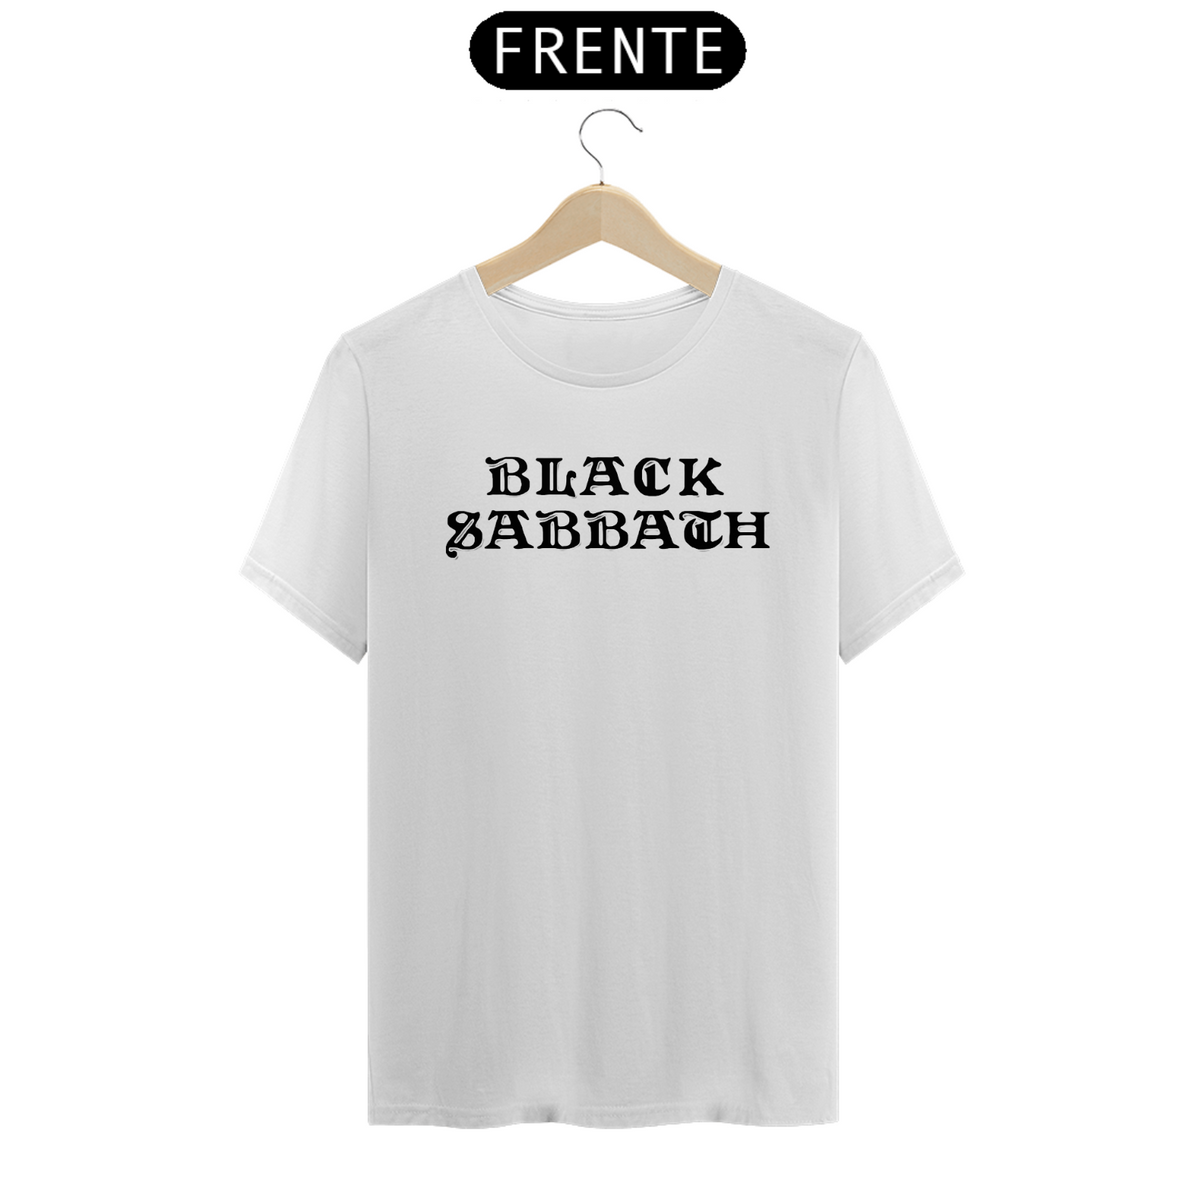 Nome do produto: Black Sabbath